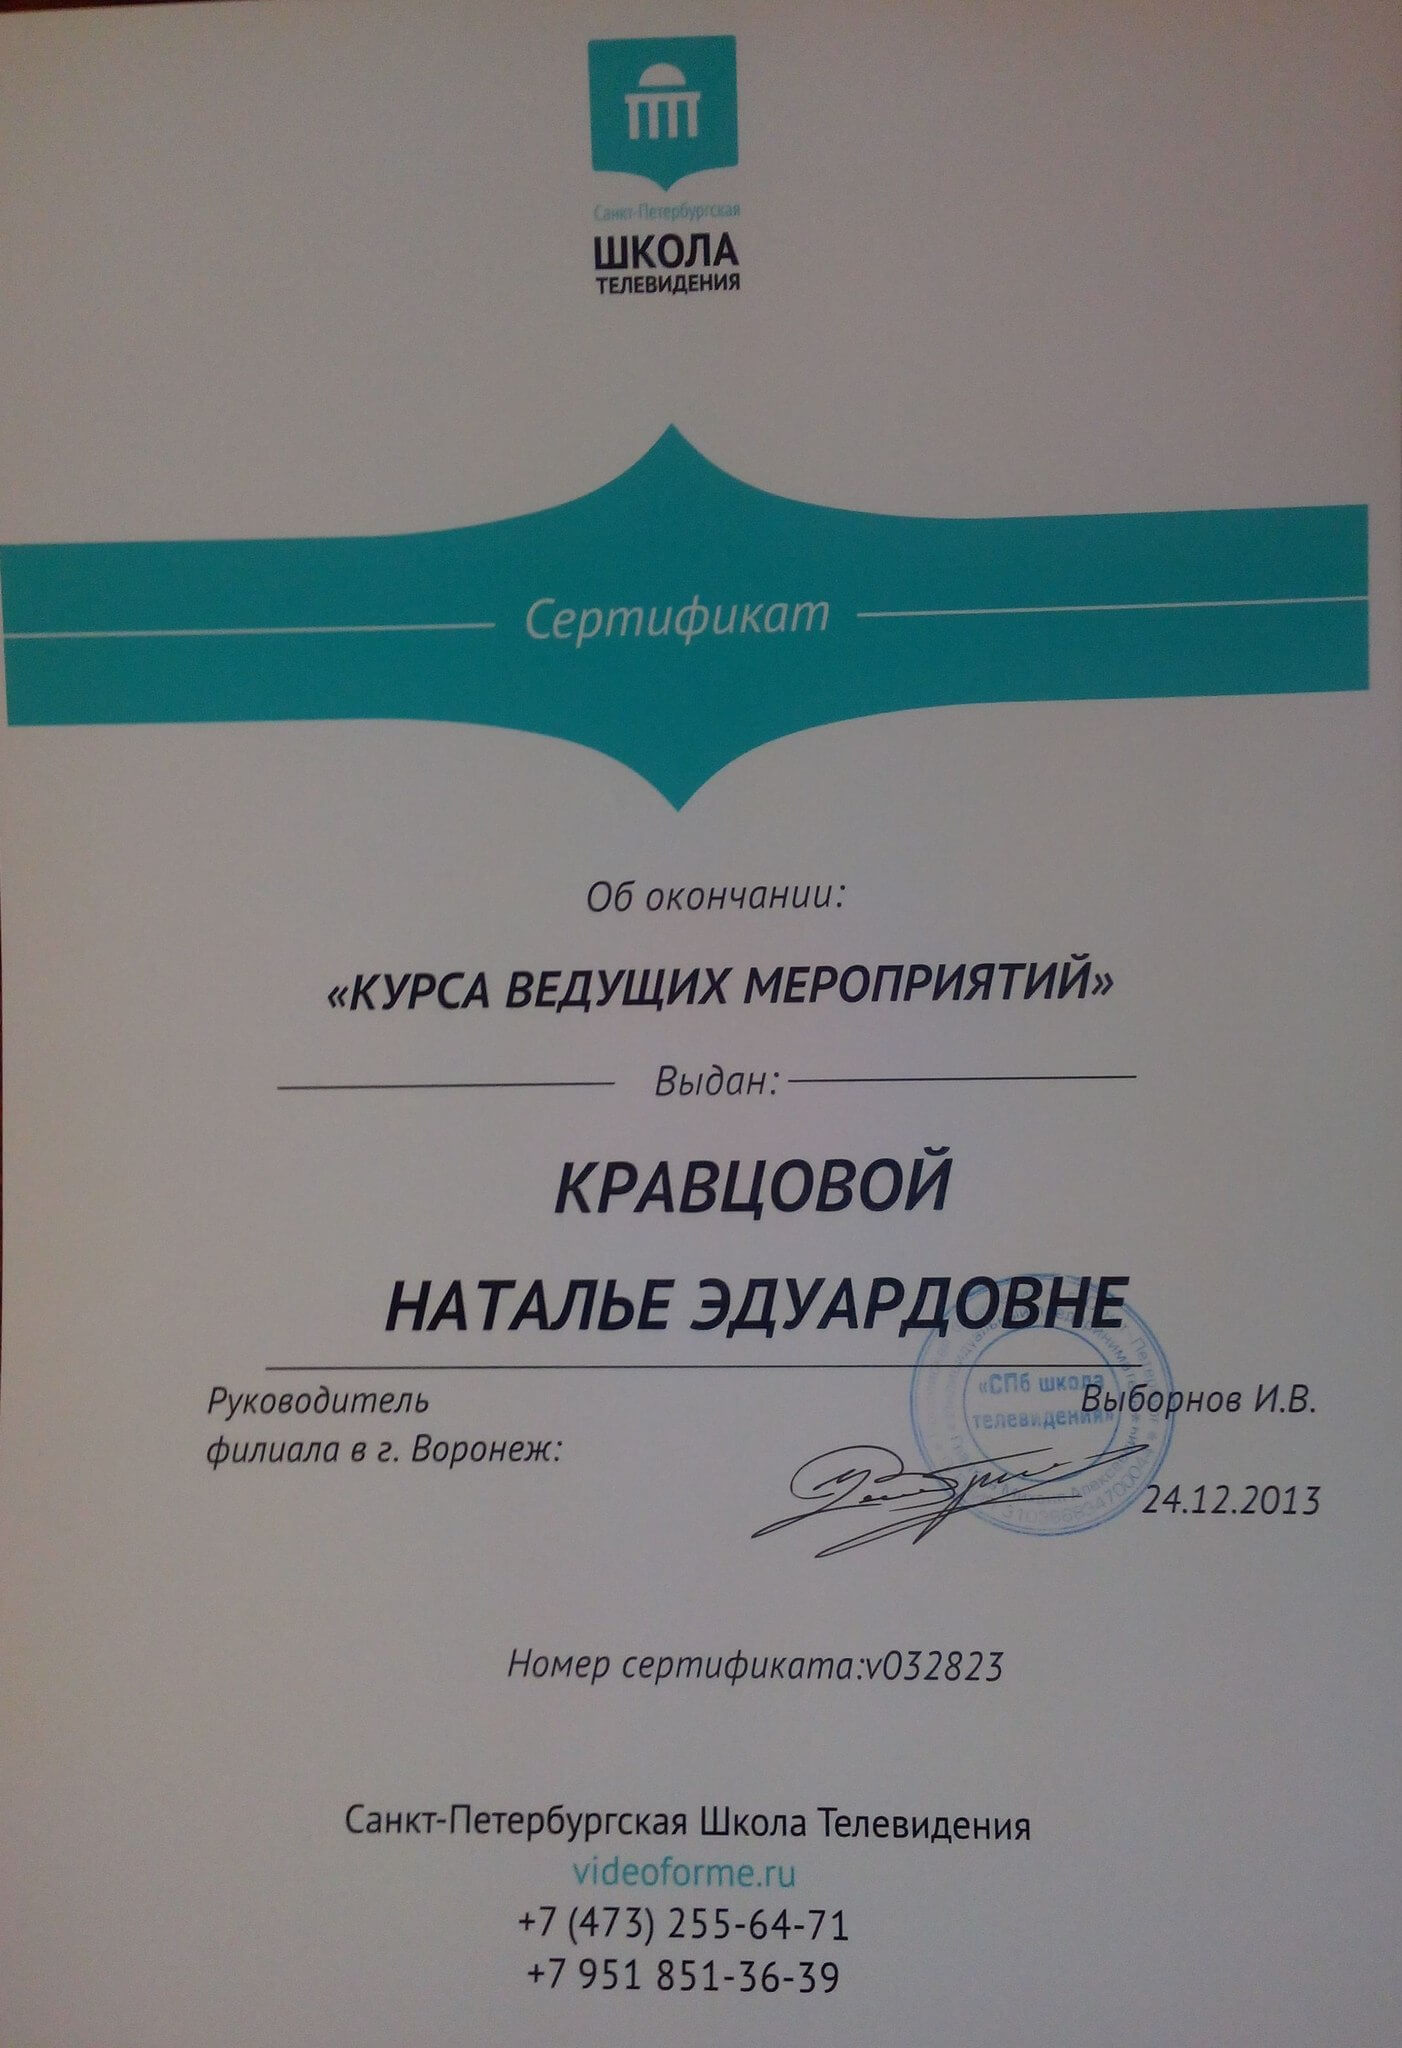 Сертификат об окончании "Курса ведущих мероприятий"